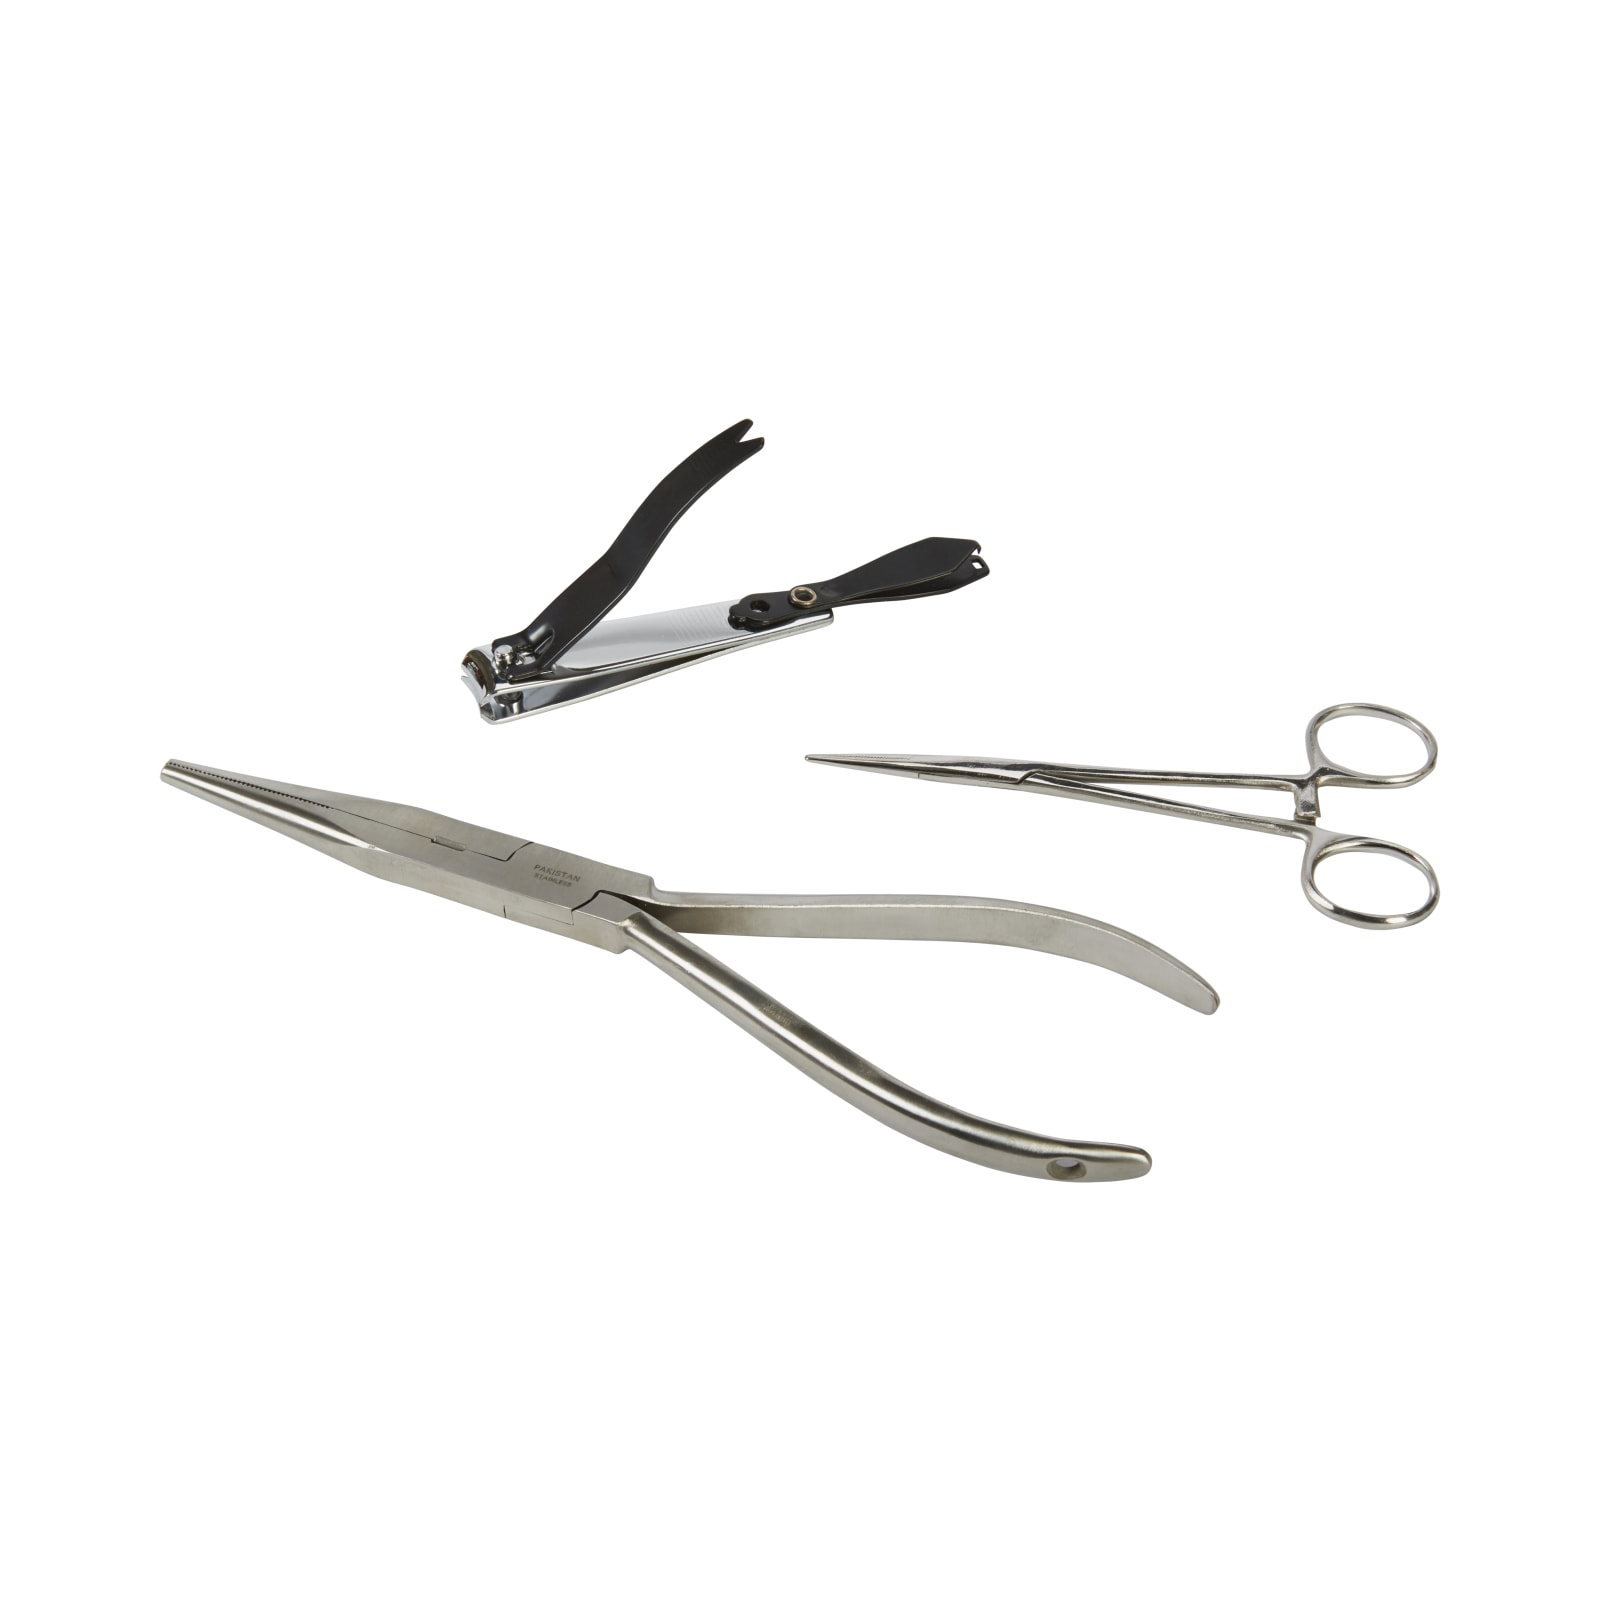 Baker Forceps With Scissors Fishing 6” Forceps Scissors Stainless